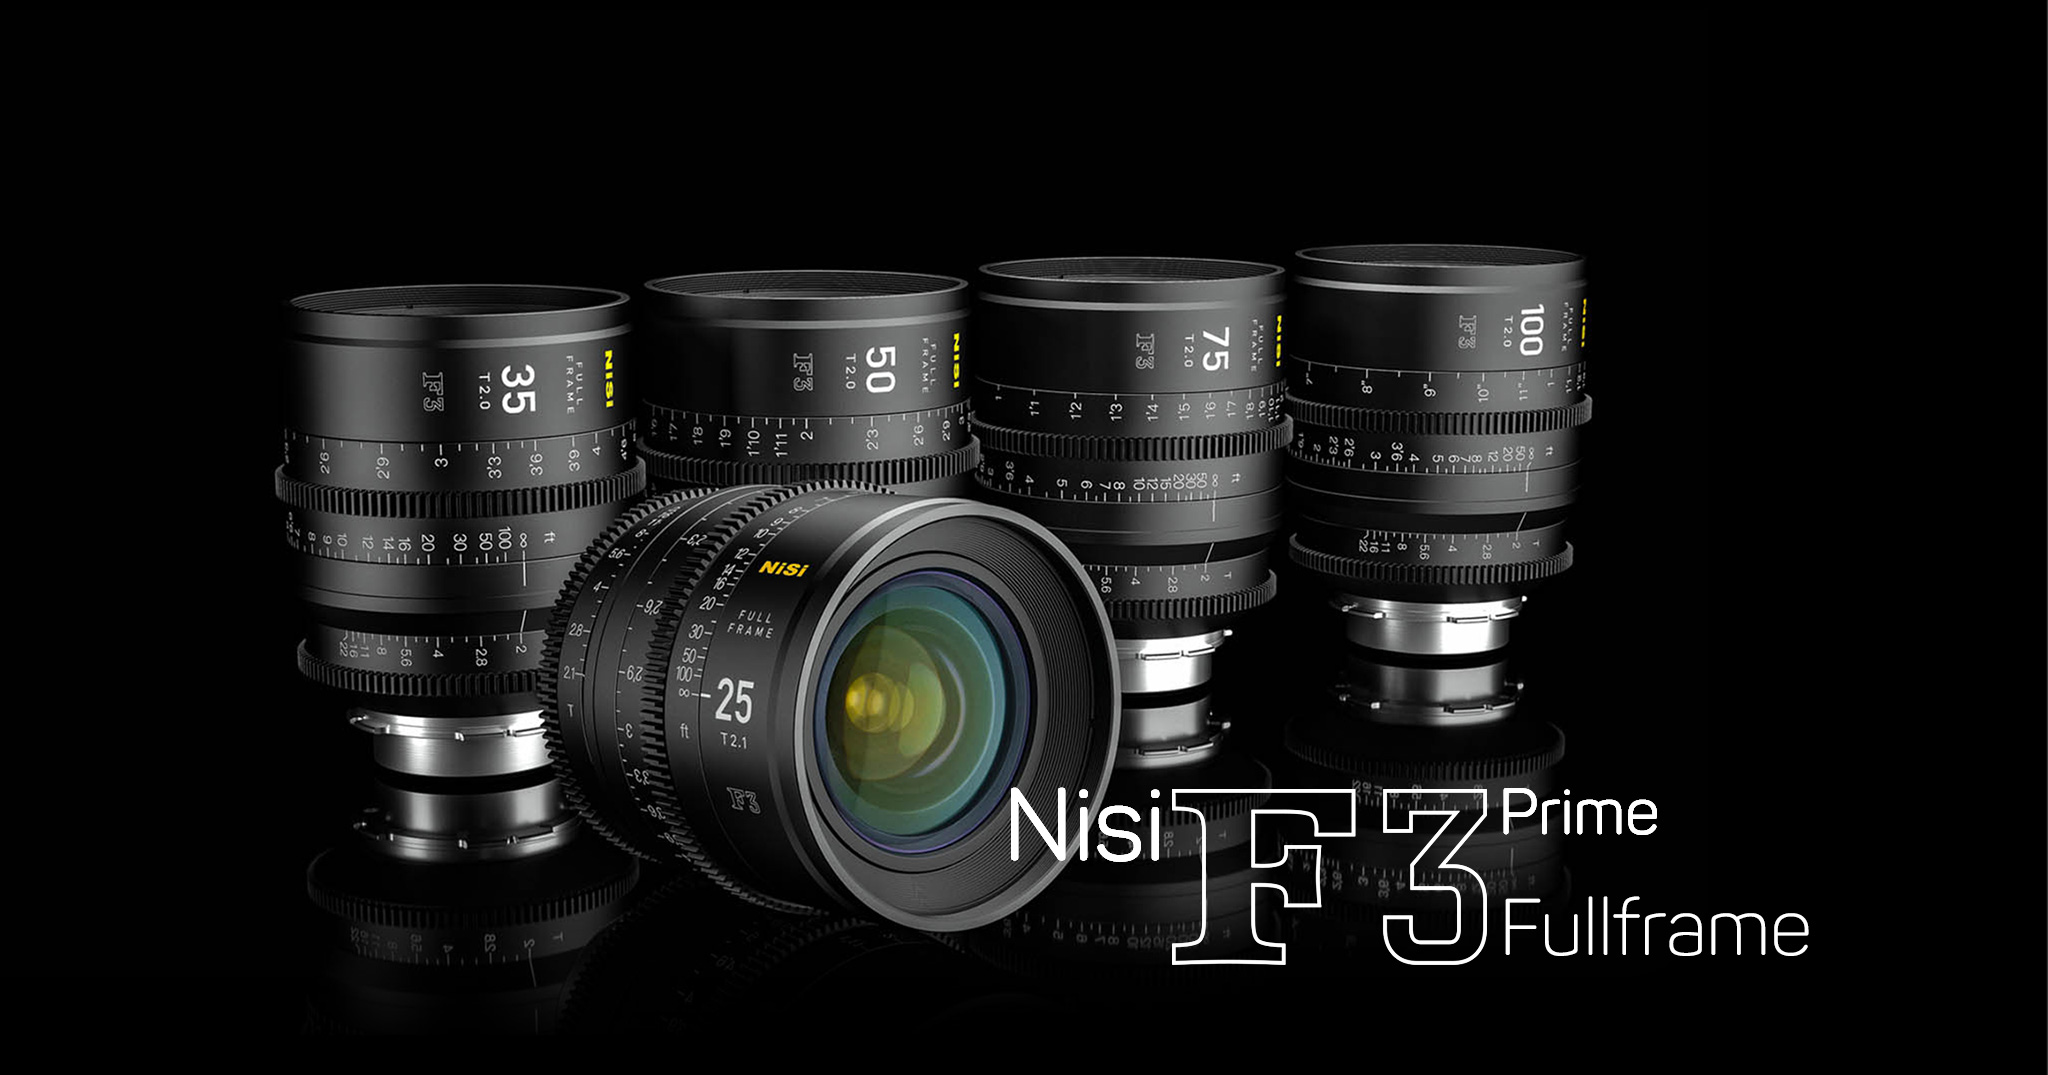 #NAB2018 - Hãng sản xuất filter Nisi, nhảy vào cuộc chiến ống Cinema với 5 ống Prime